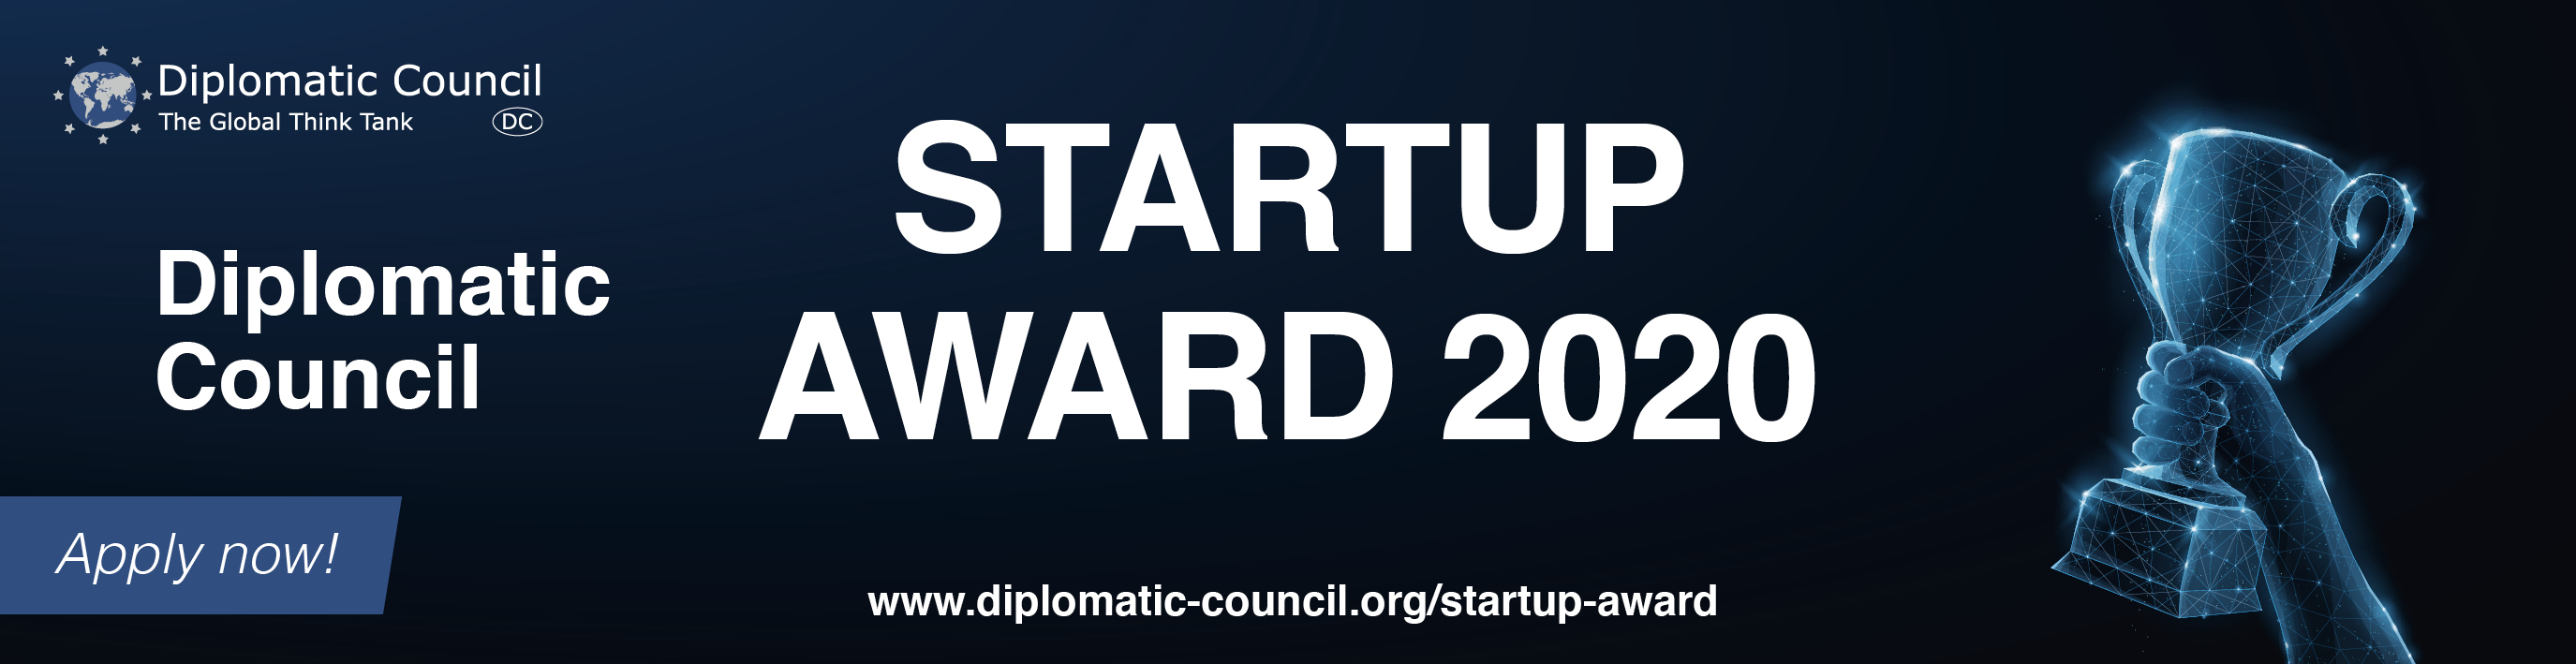 Startup Award